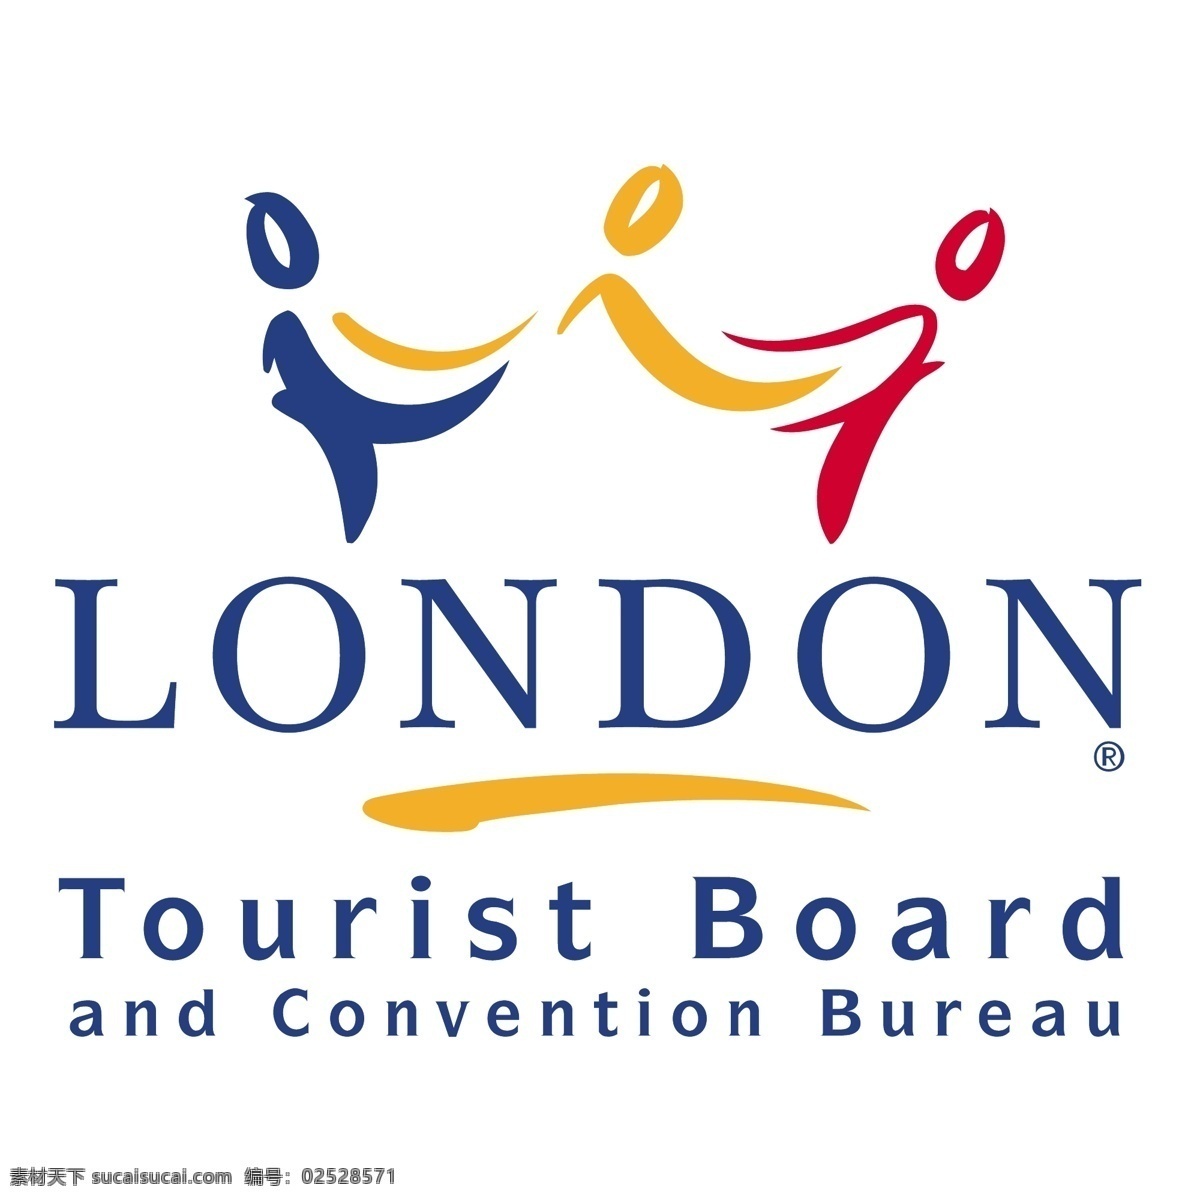 伦敦 旅游局 会议 局 免费 会展 标志 自由 白色